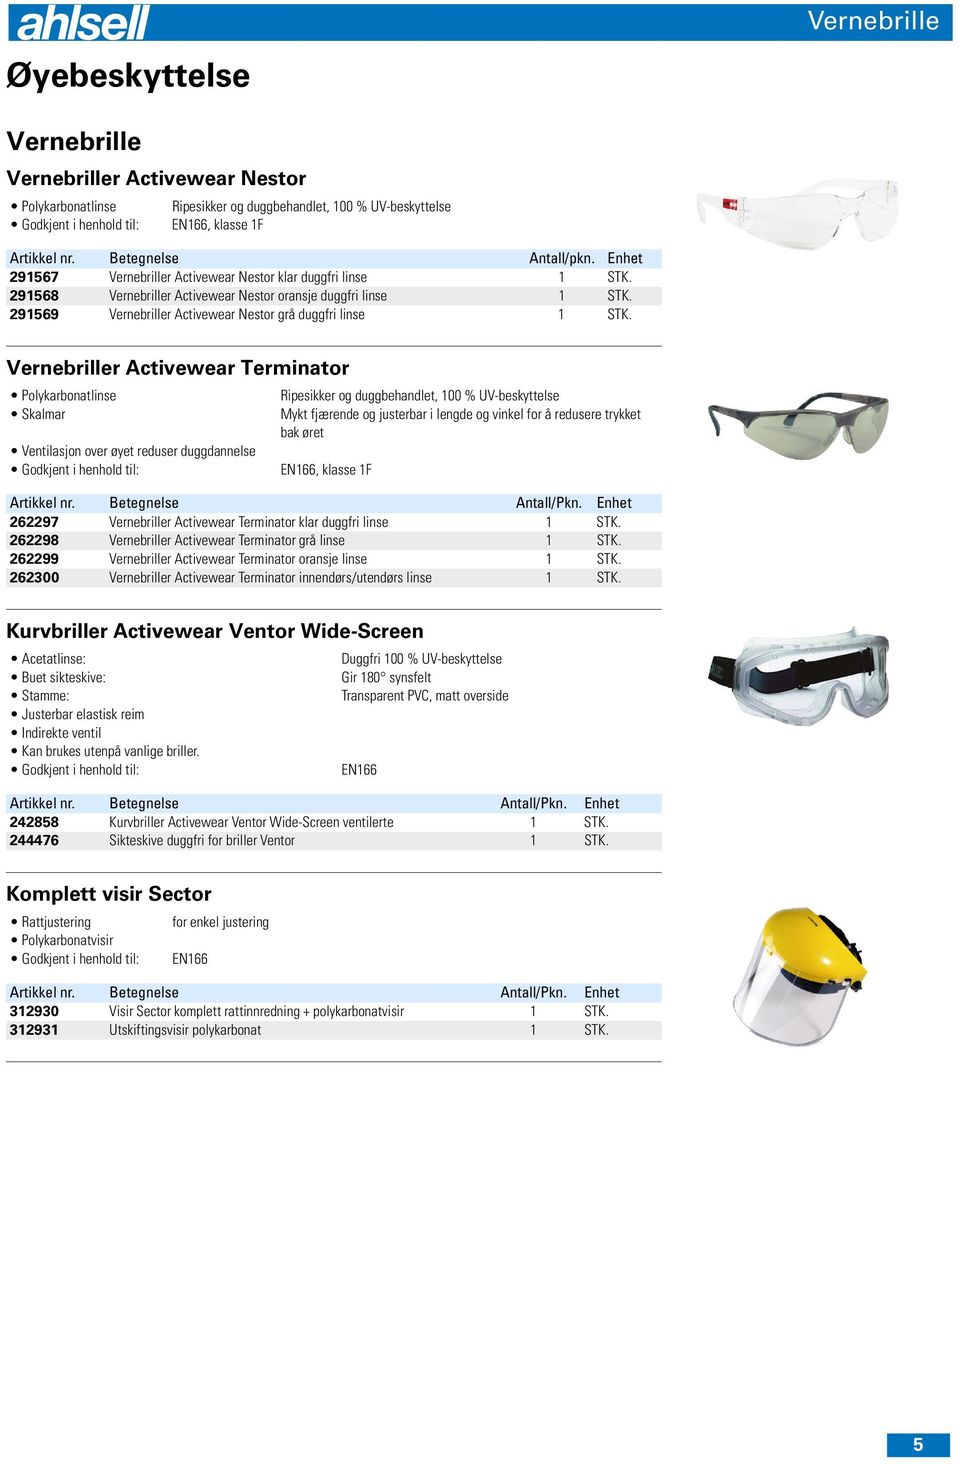 Vernebriller Activewear Terminator Polykarbonatlinse Skalmar Ventilasjon over øyet reduser duggdannelse Ripesikker og duggbehandlet, 100 % UV-beskyttelse Mykt fjærende og justerbar i lengde og vinkel